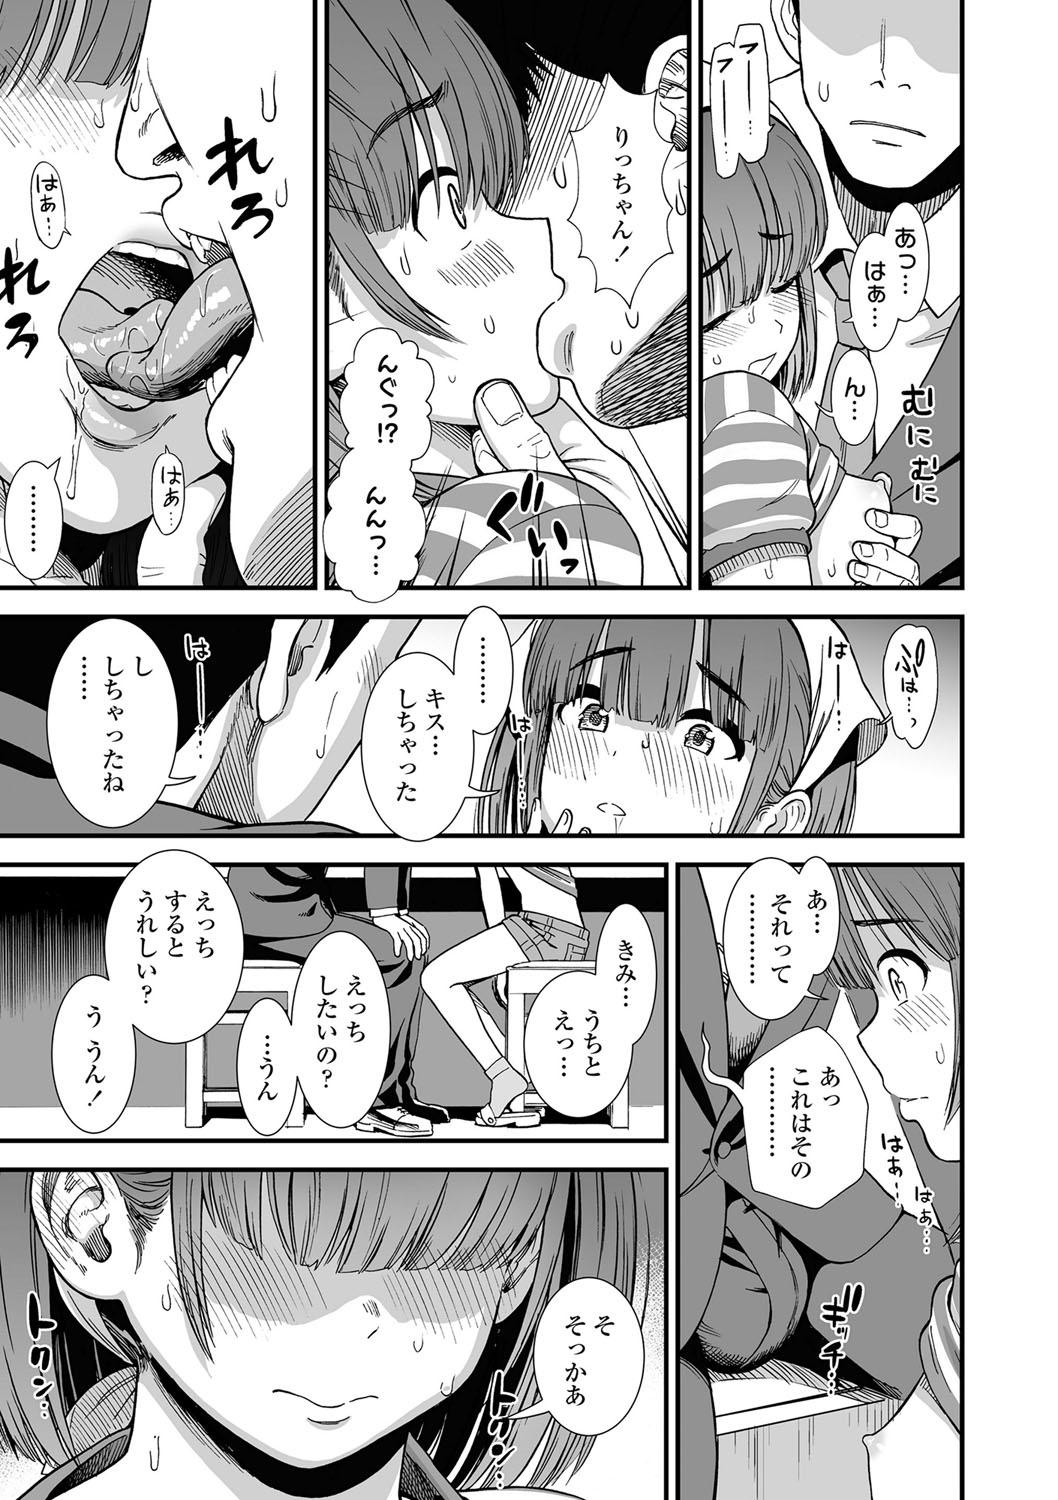 Screaming Ore wa Kuzu dakara koso Sukuwareru Kenri ga Aru! Femdom - Page 12